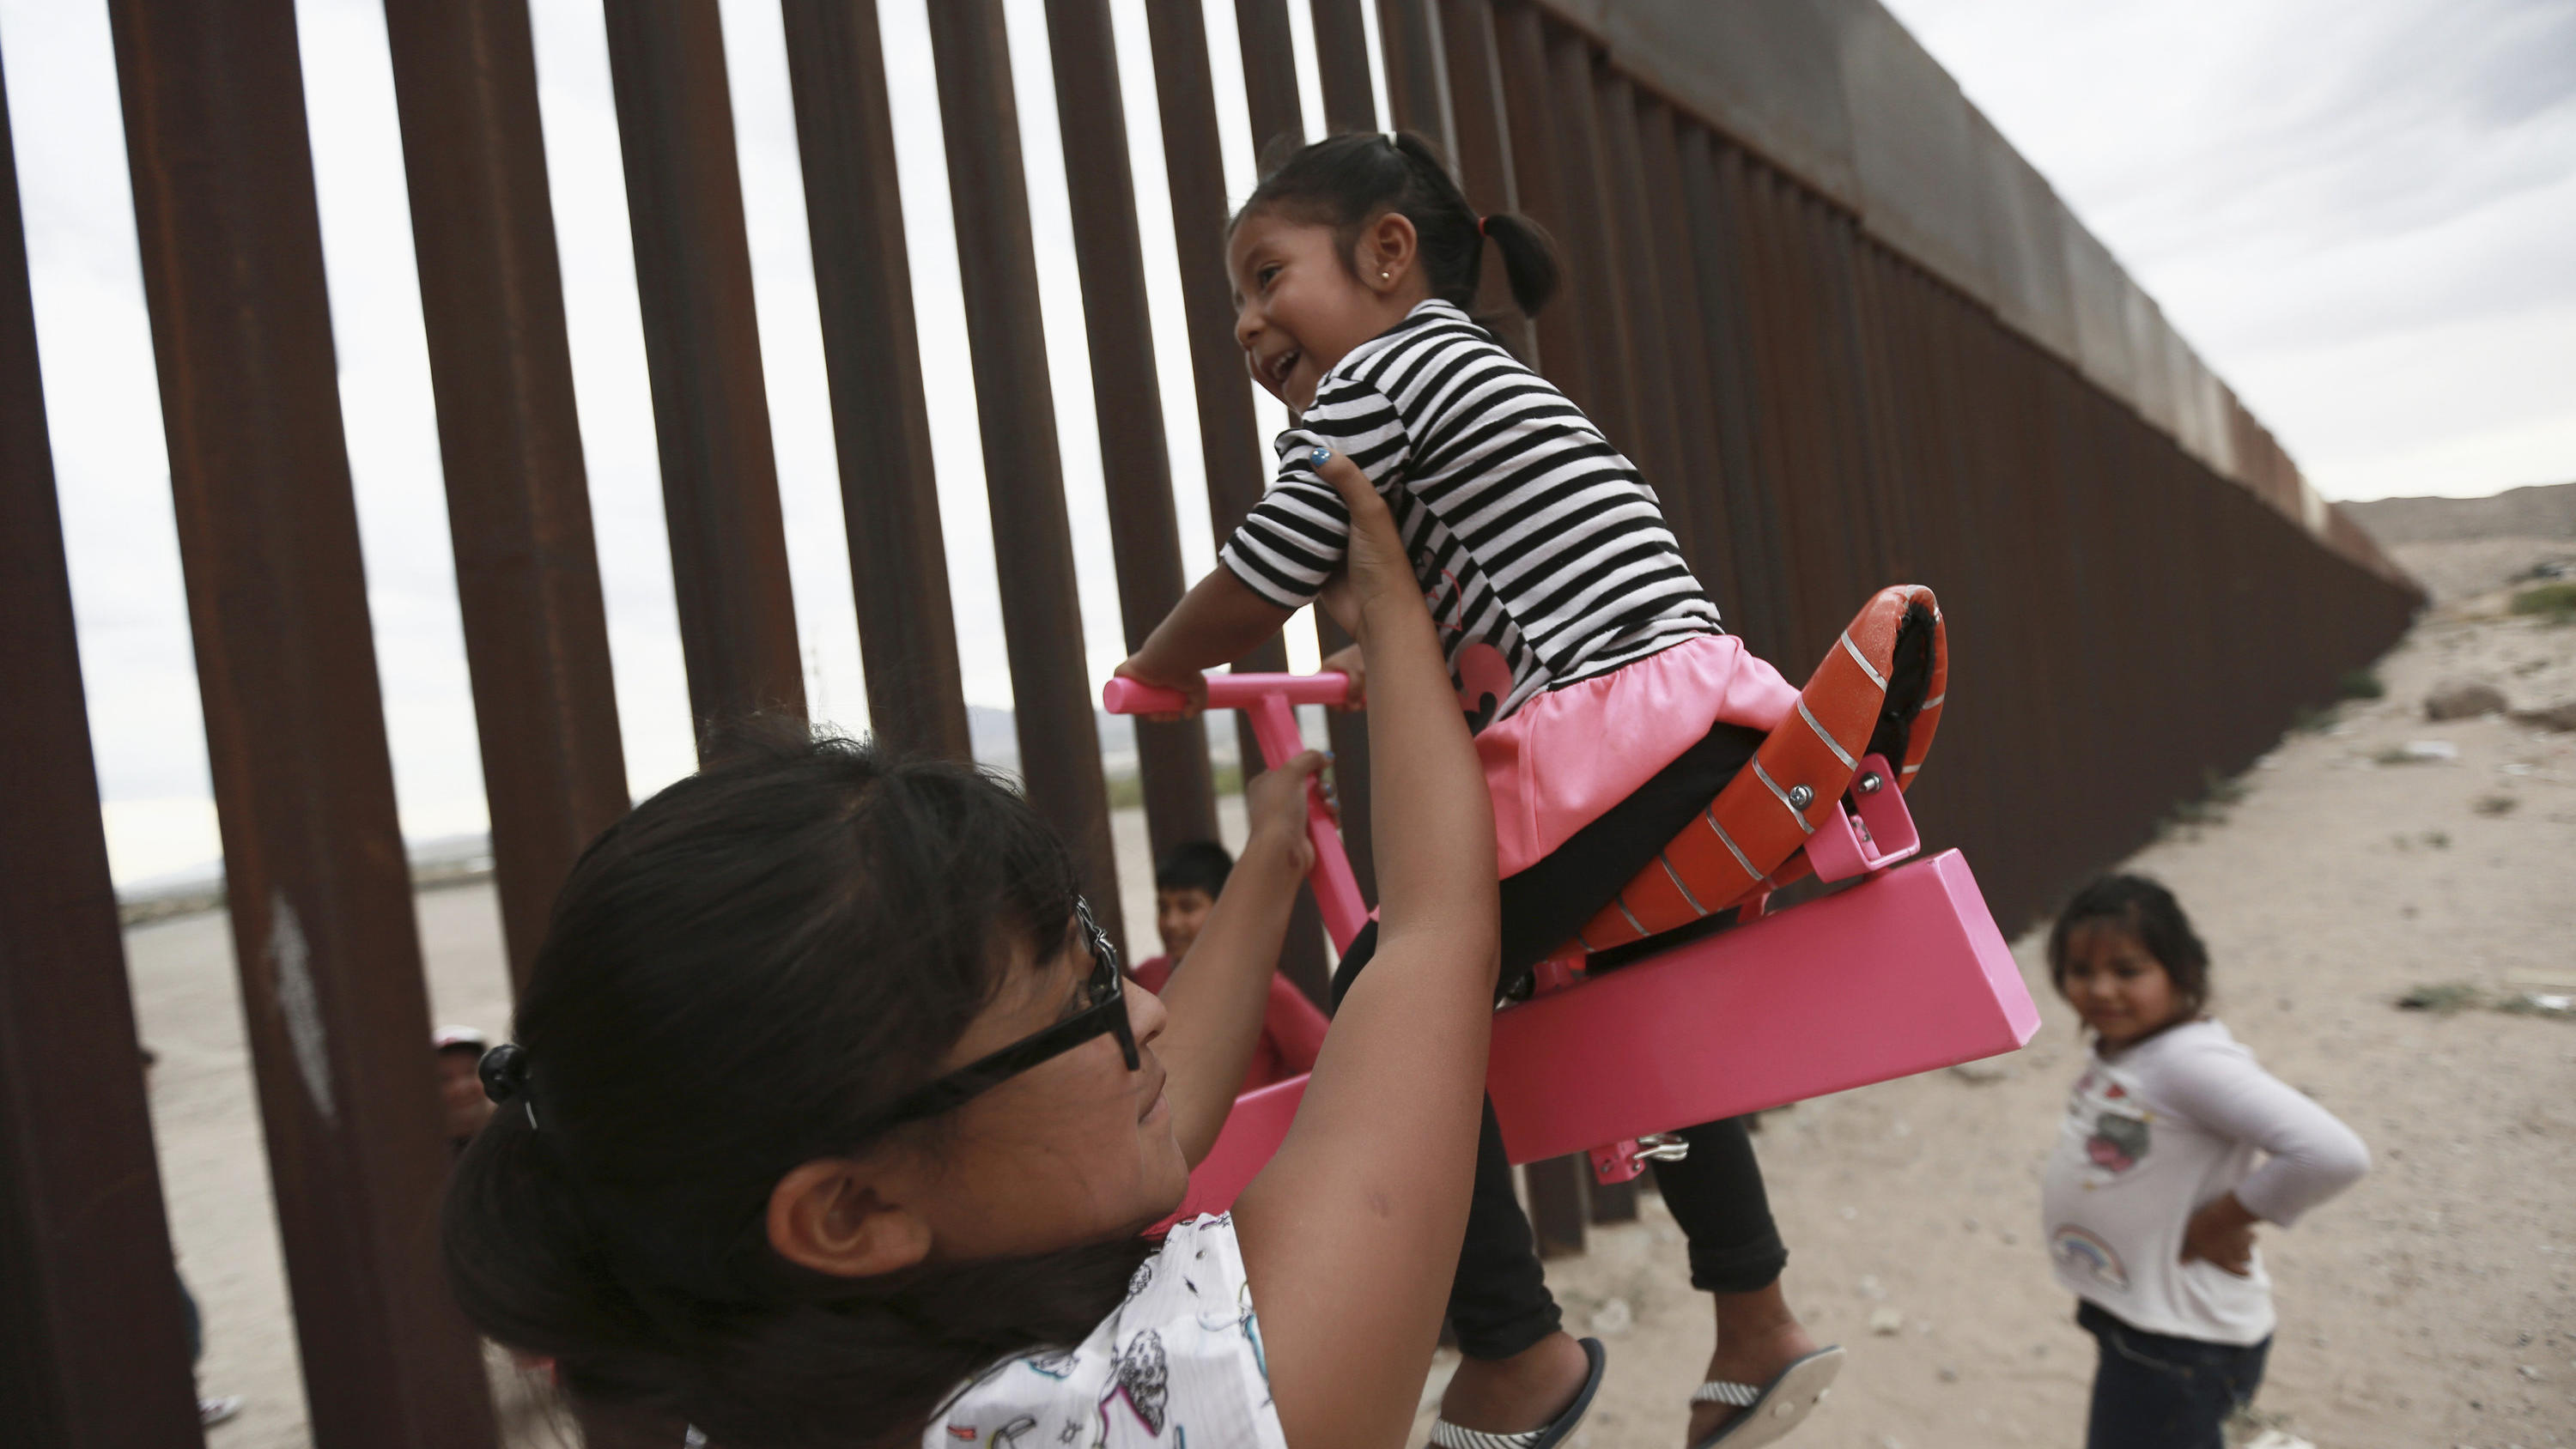 28.07.2019, Mexiko, Ciudad Juarez: Eine Frau spielt mit Mädchen an einer Wippe, die am Grenzzaun zwischen Mexiko und den USA angebracht ist. Die Wippe wurde von Ronald Rael, einem Professor für Architektur in Kalifornien, entworfen. Foto: Christian C